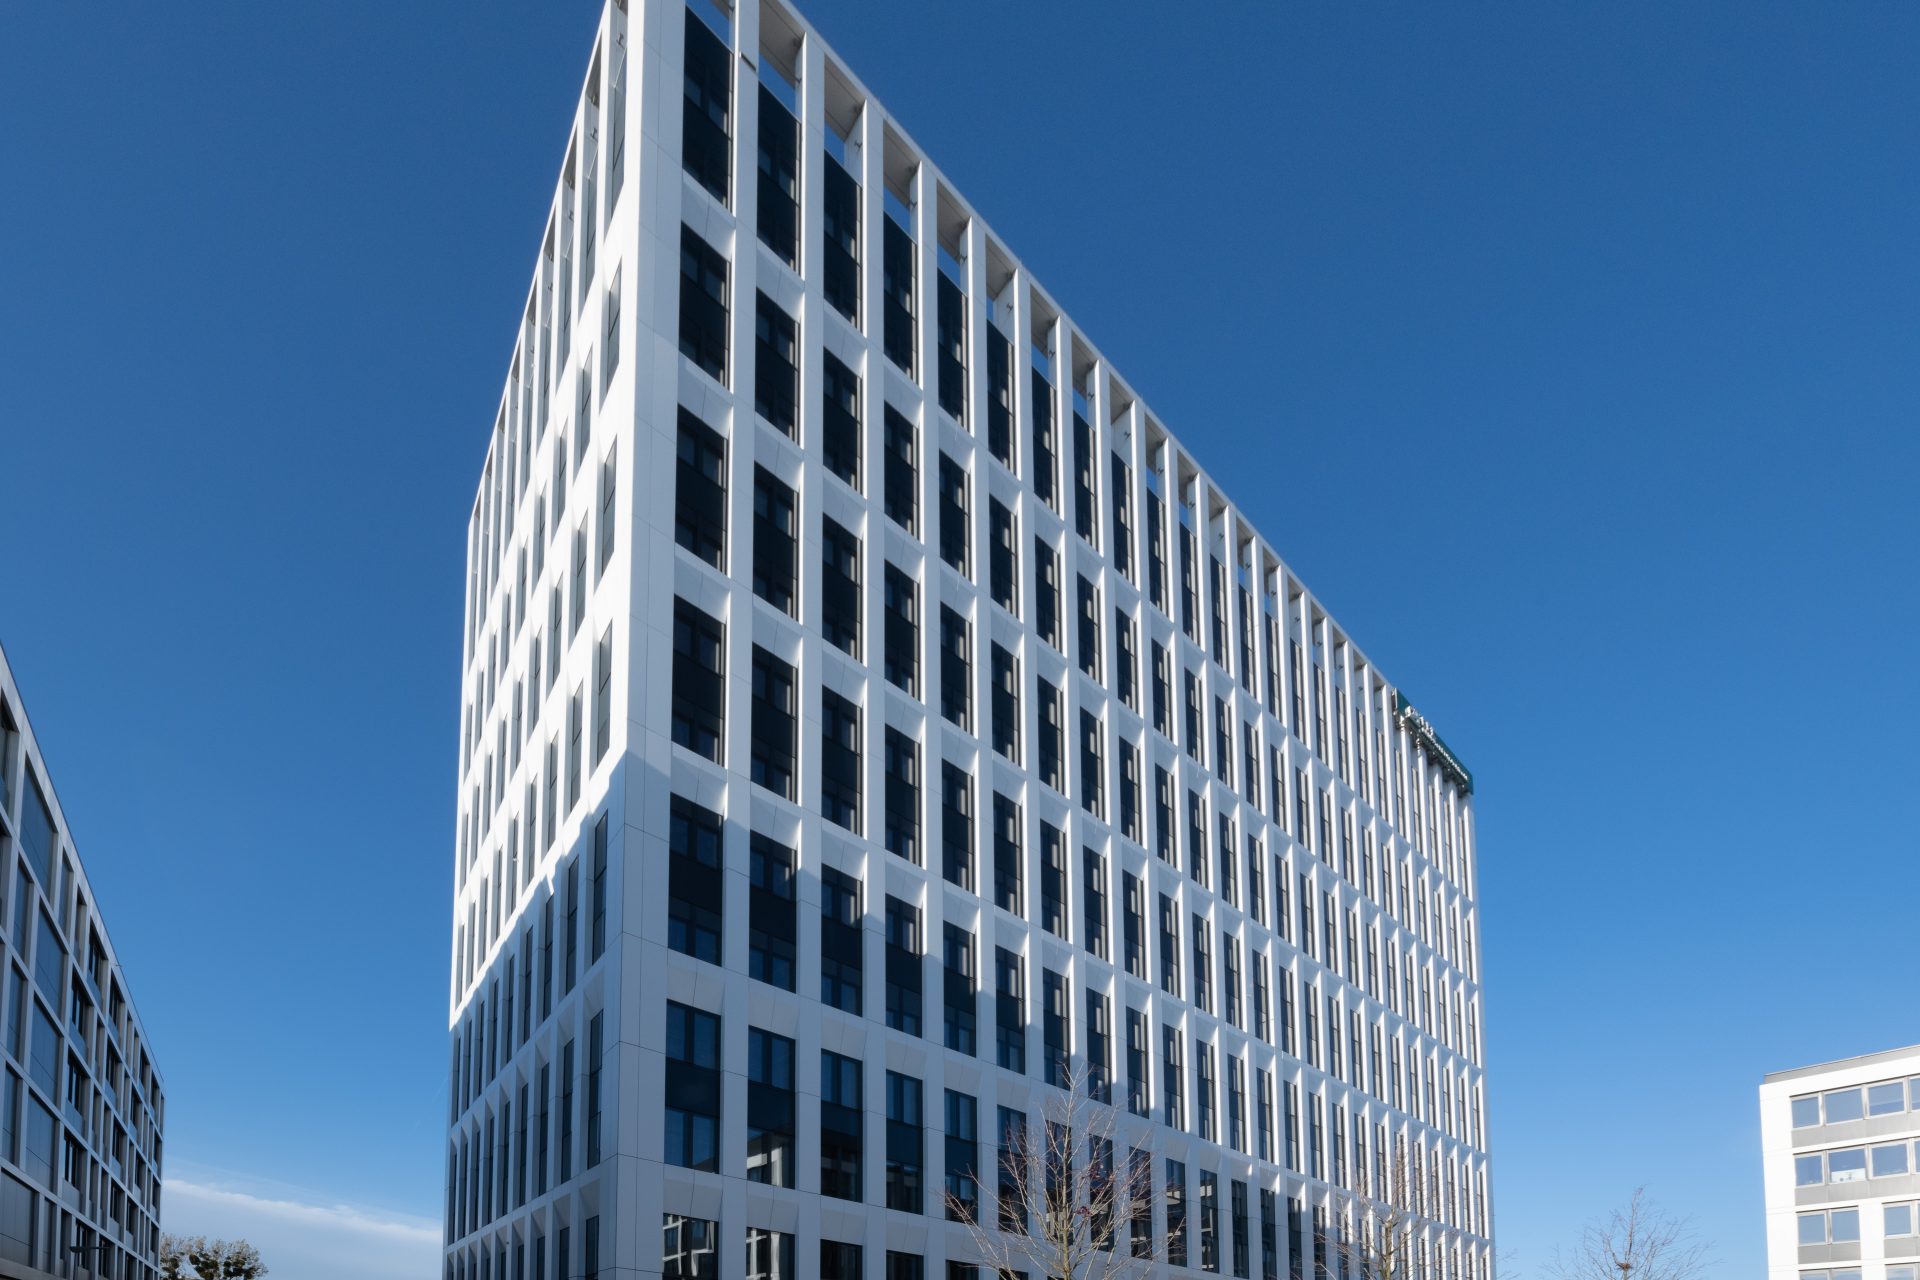 fasada nowoczesnego budynku